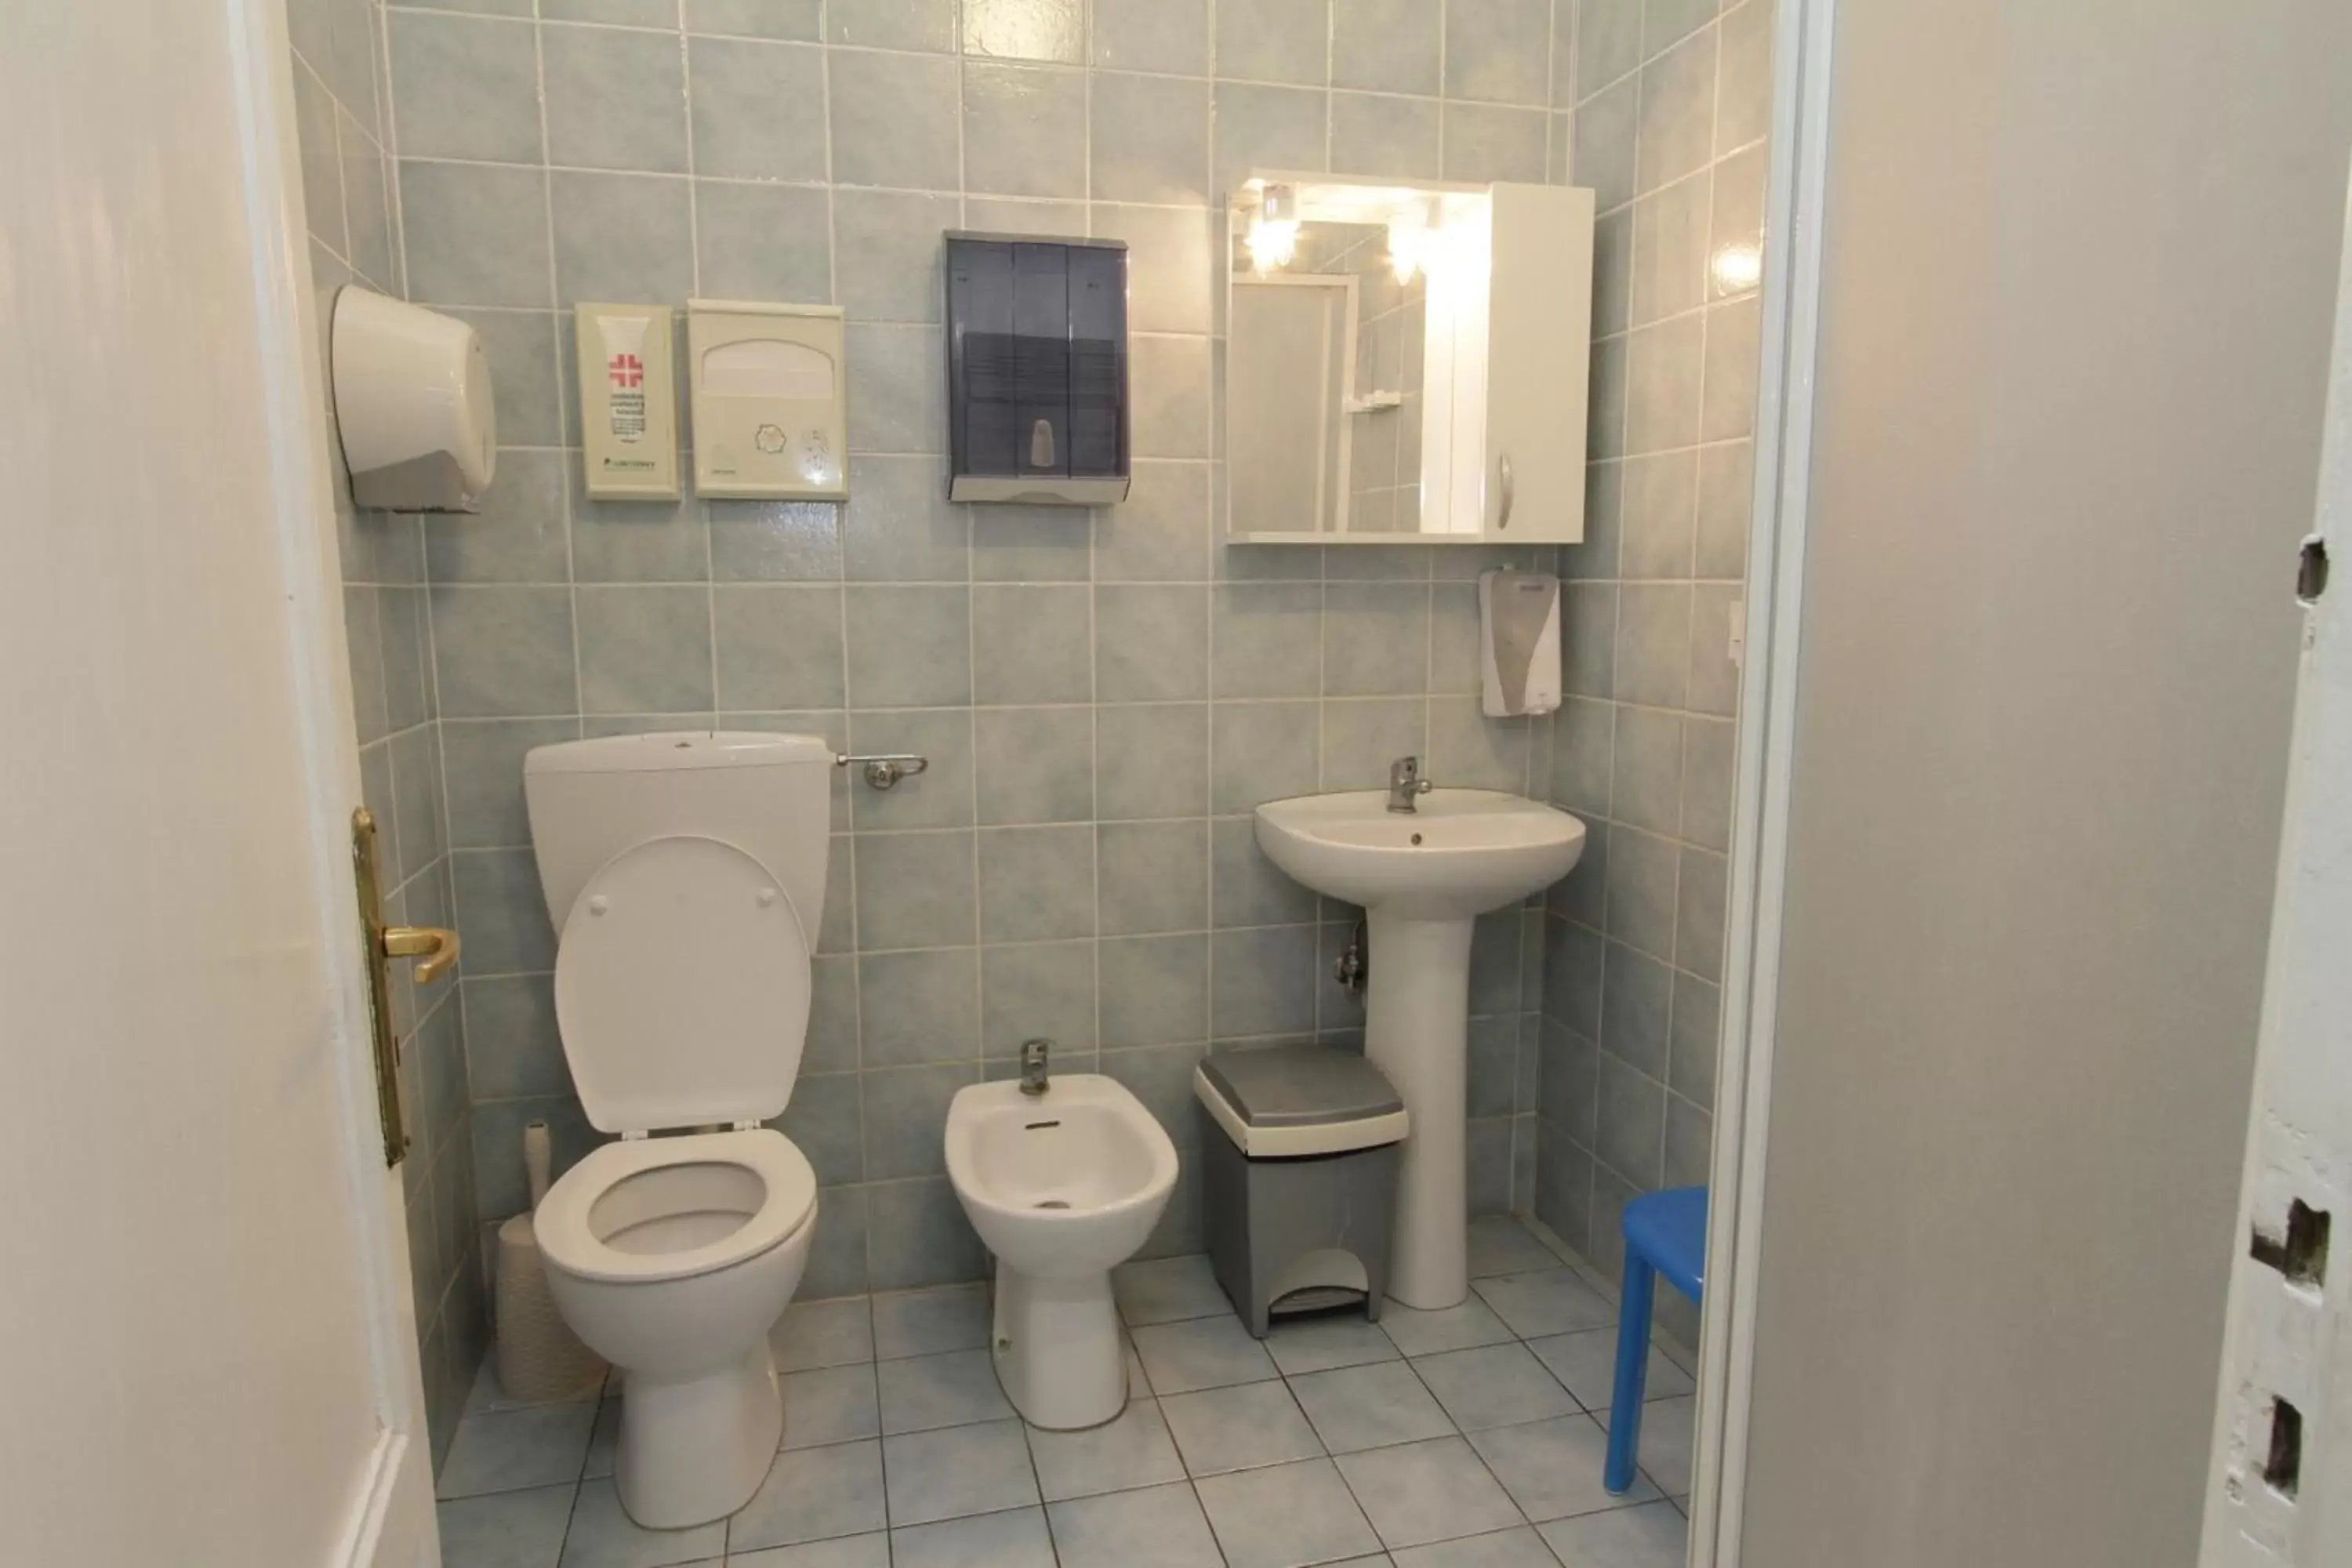 Area and facilities, Bathroom in Hotel Barone